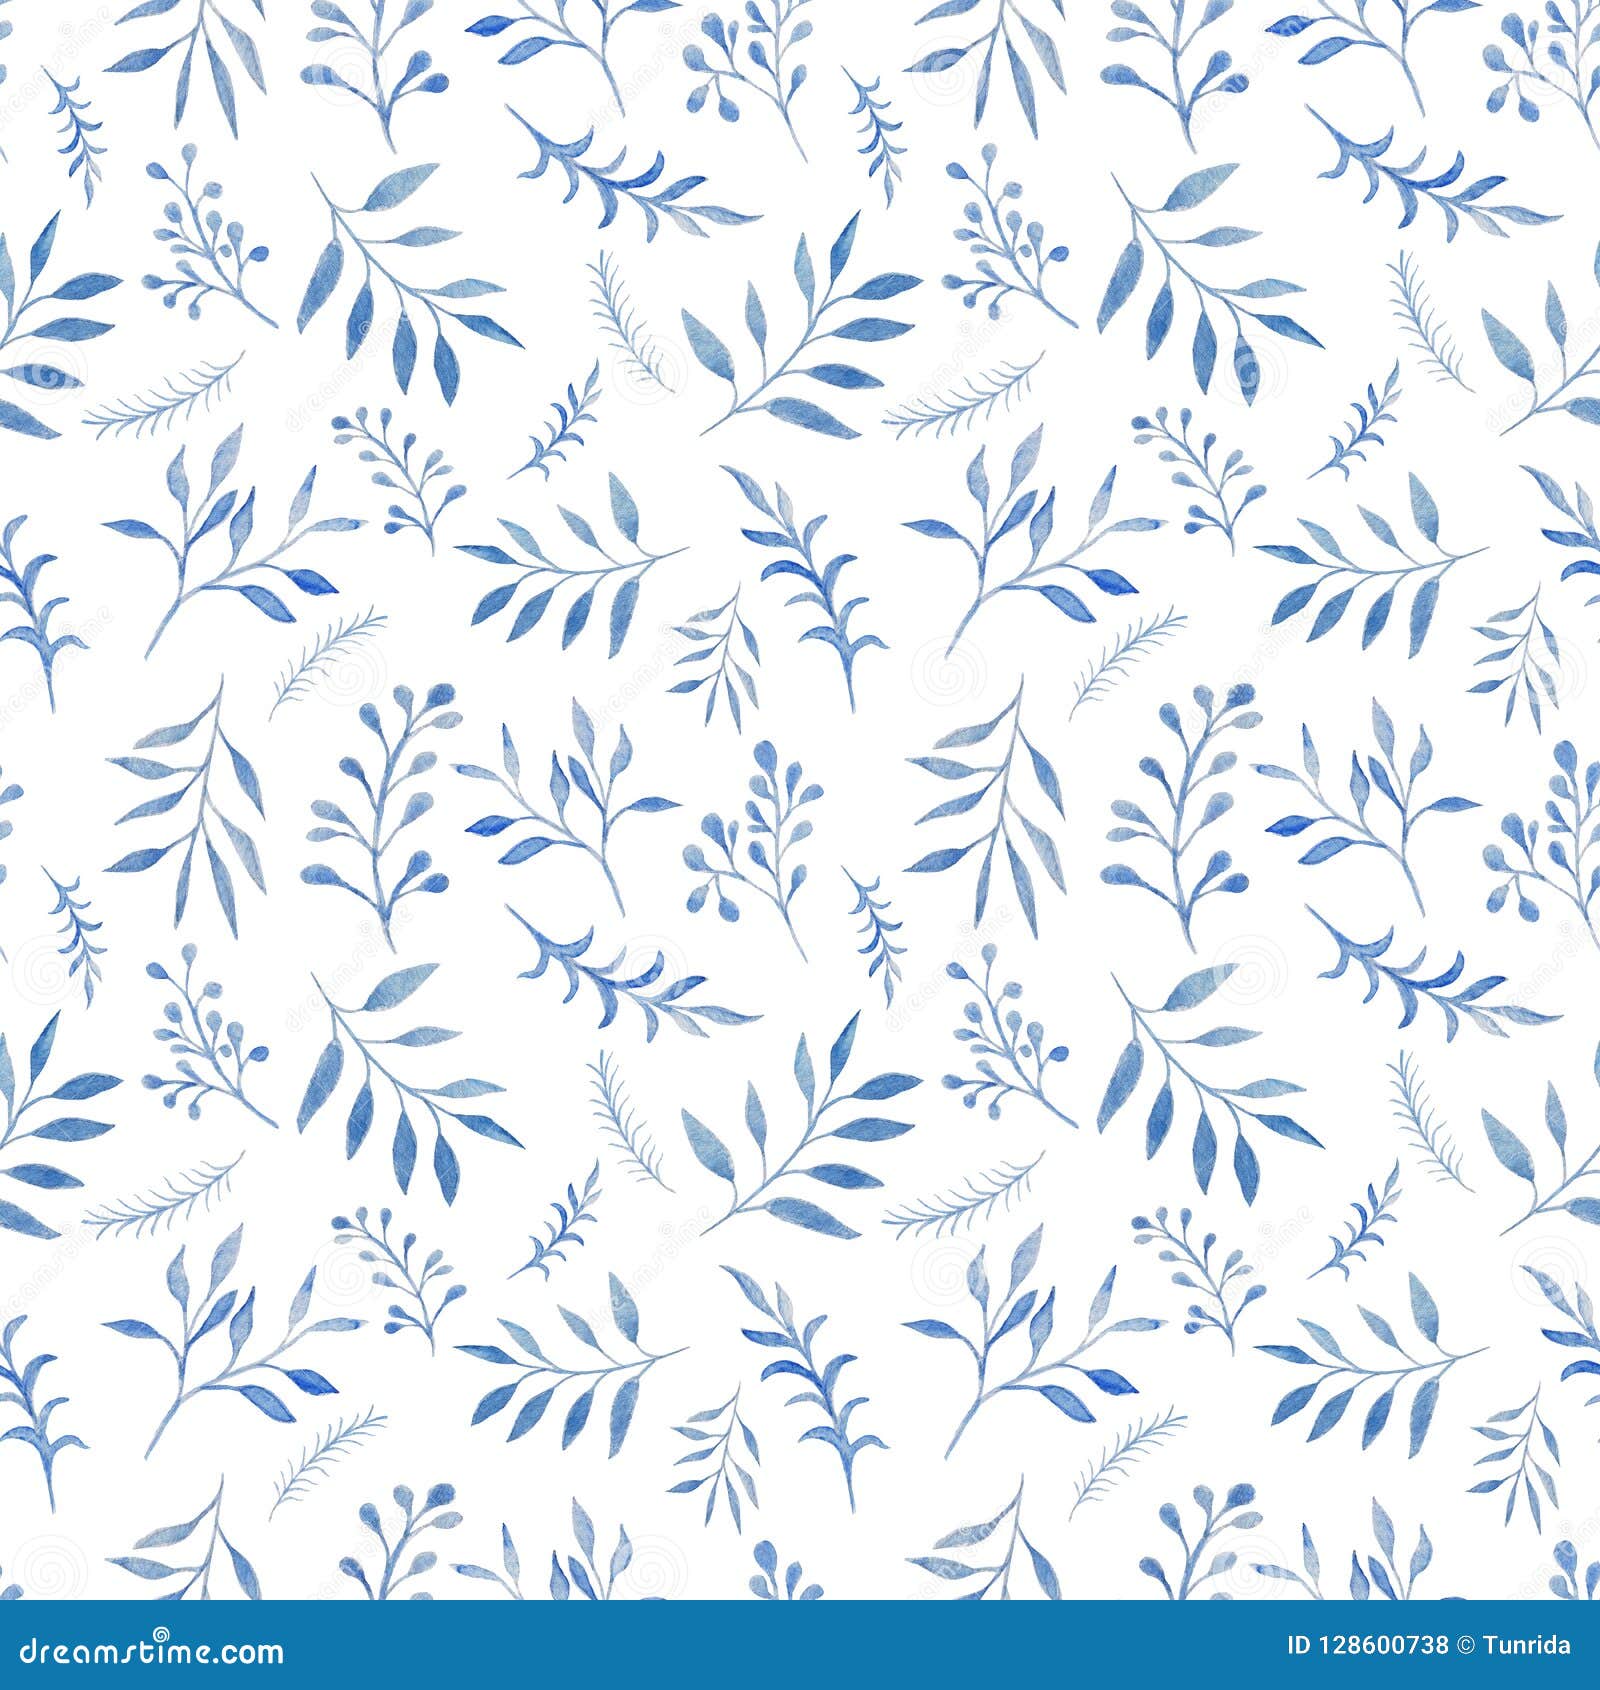 Họa tiết lá màu xanh trang trí trên nền trắng sẽ tạo nên một không gian trang nhã và đẹp mắt cho thiết bị của bạn. Với sự kết hợp giữa màu trắng tinh khôi và màu xanh tươi mát của lá, hình nền này sẽ mang đến cho bạn những trải nghiệm tuyệt vời khi sử dụng thiết bị.